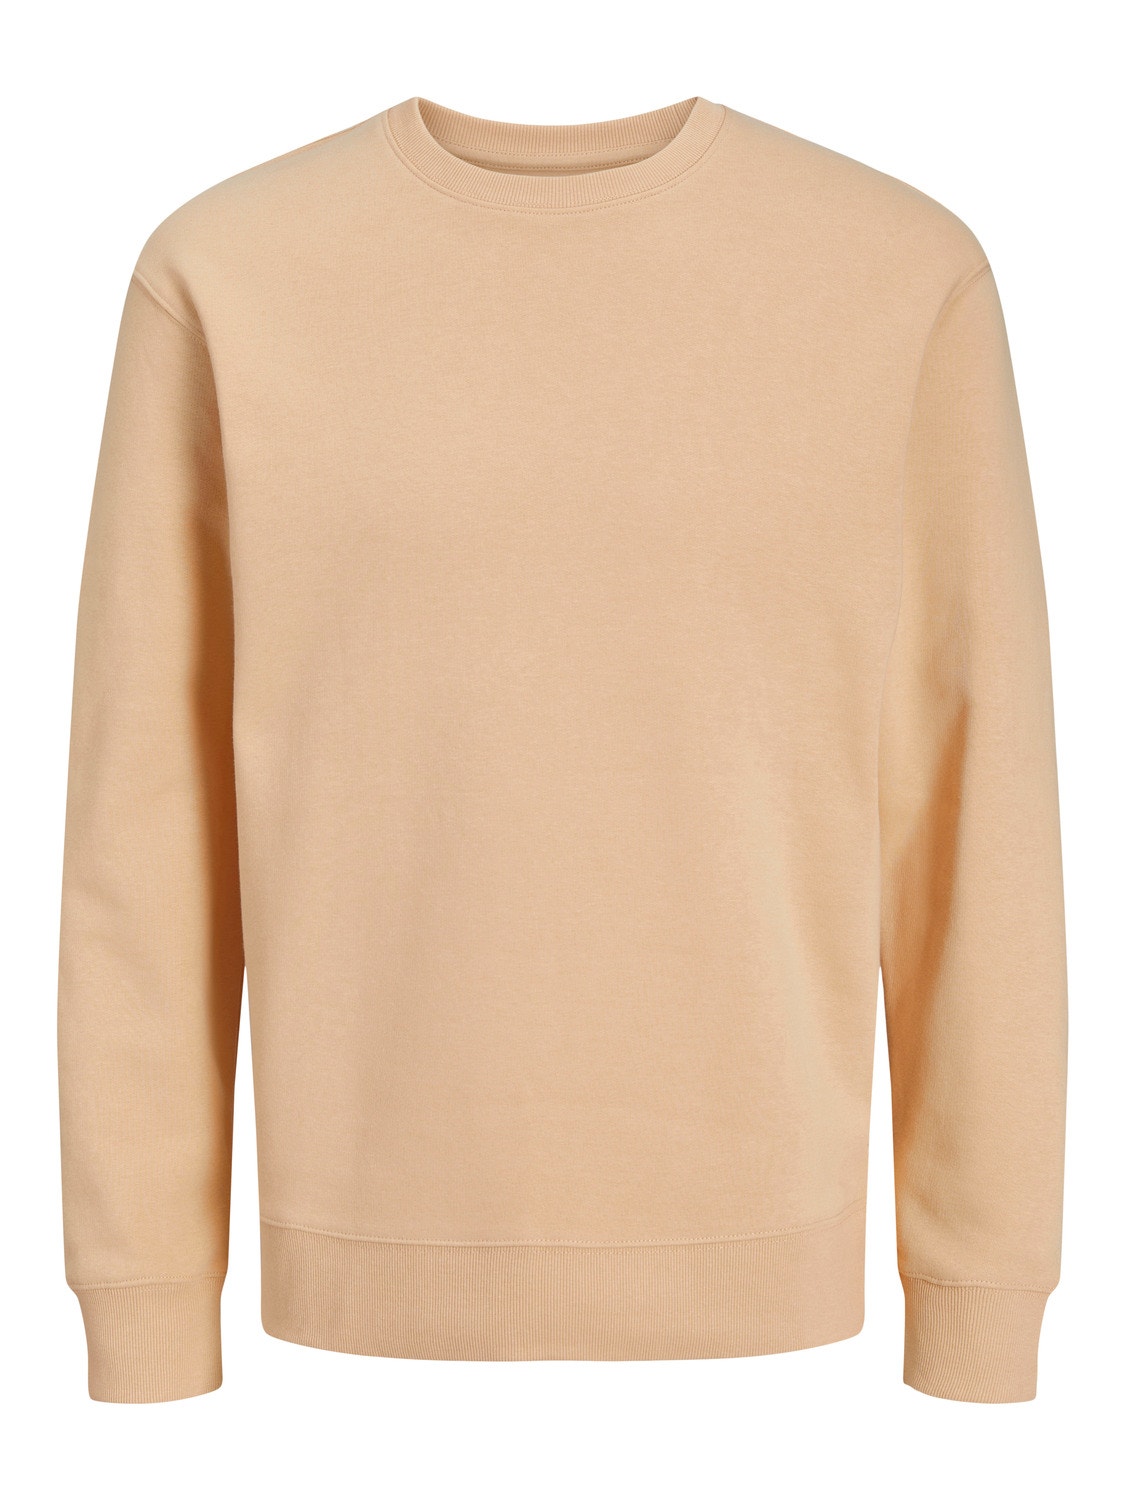 Jack & Jones Plain Crew neck Sweatshirt -Apricot Ice  - 12208182